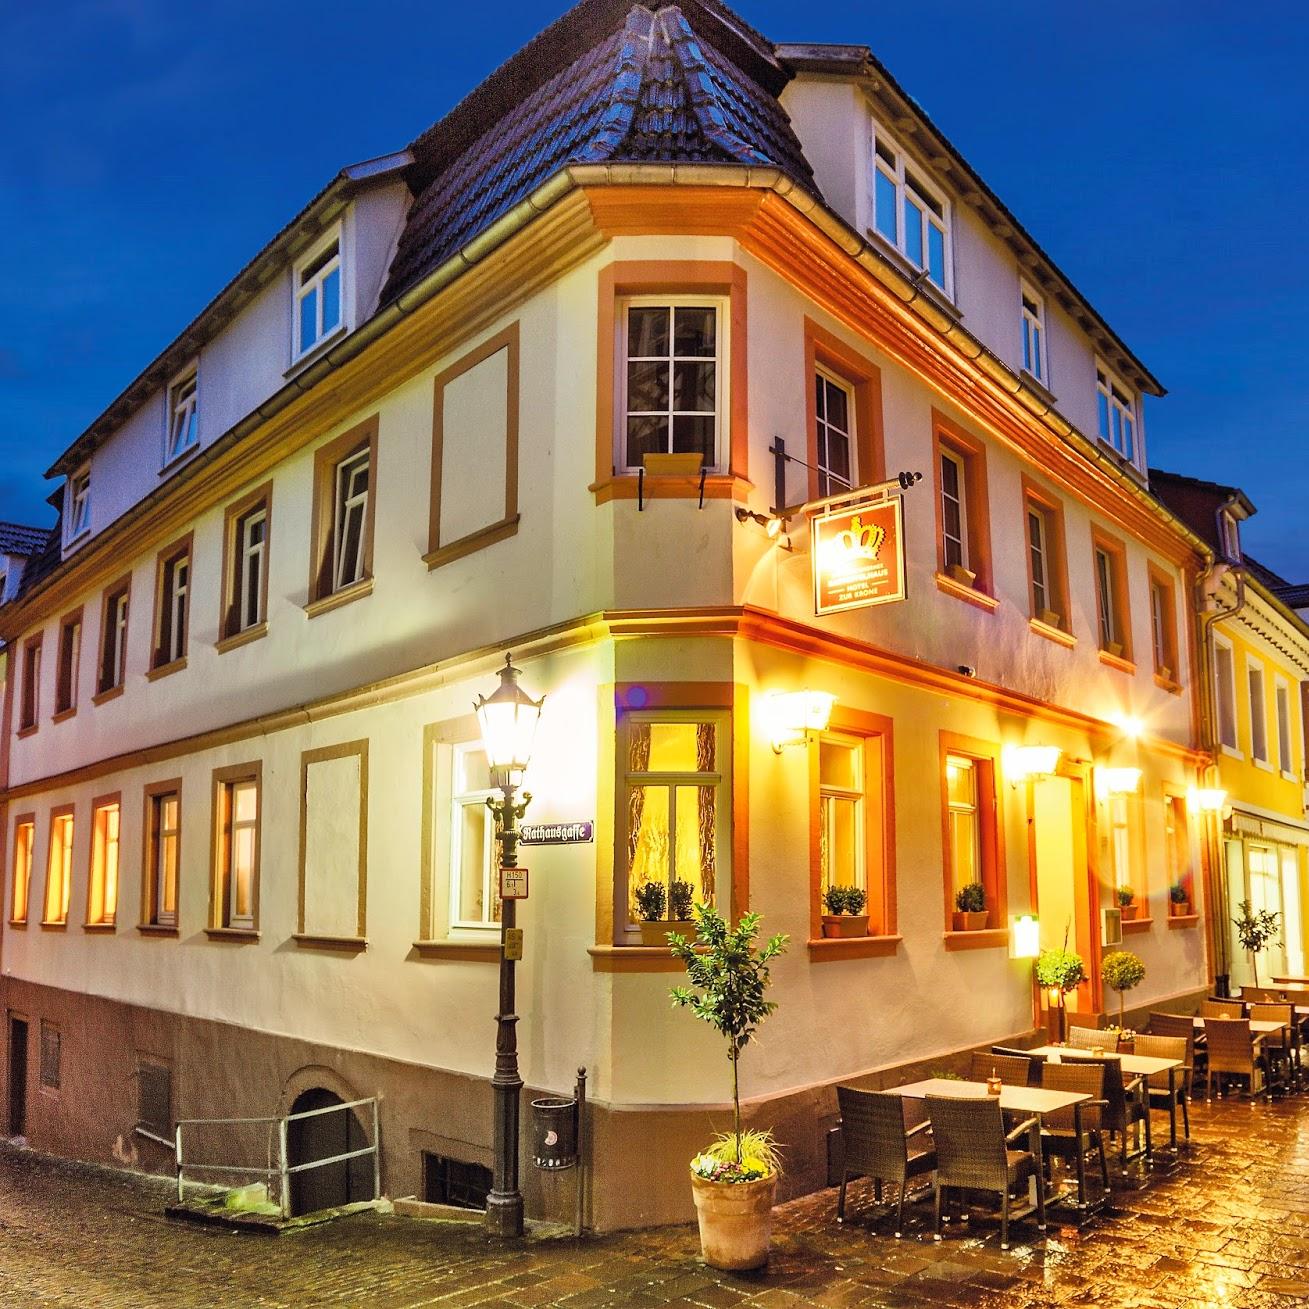 Restaurant "Hotel Zur Krone" in Hirschhorn (Neckar)